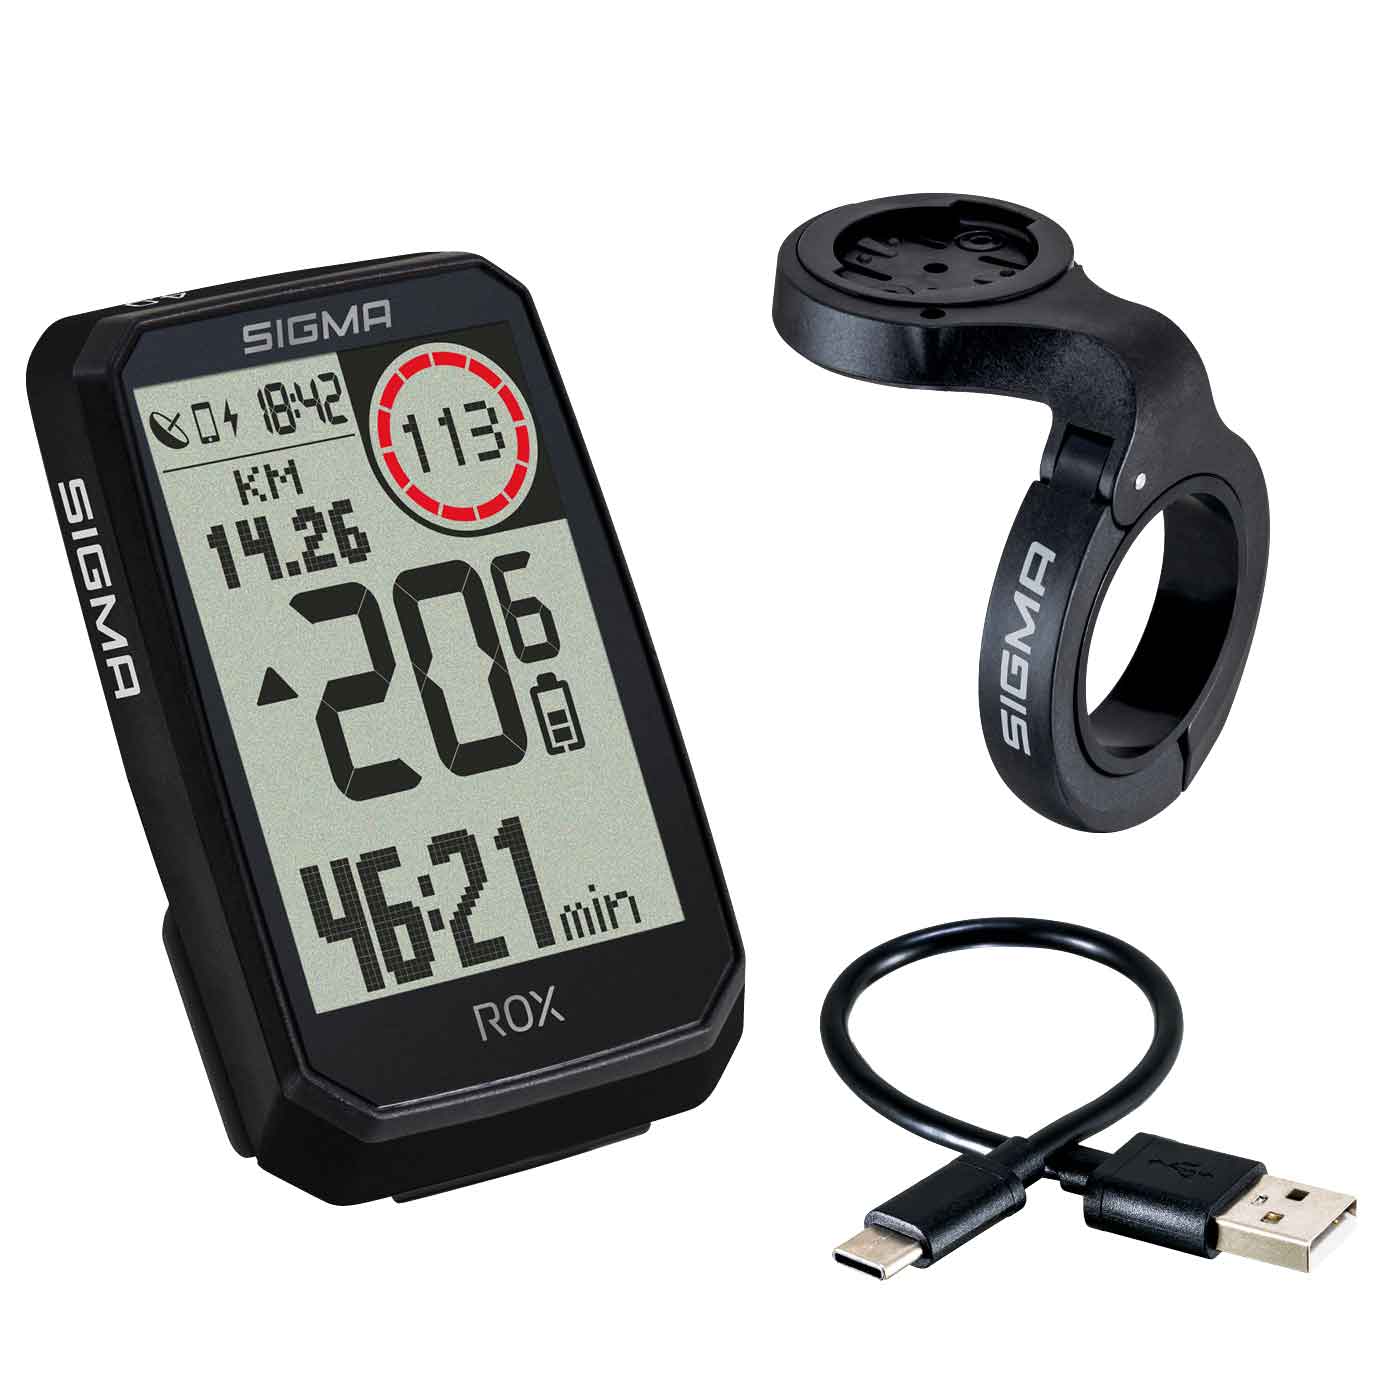 Produktbild von SIGMA ROX 4.0 Endurance GPS Fahrradcomputer - schwarz